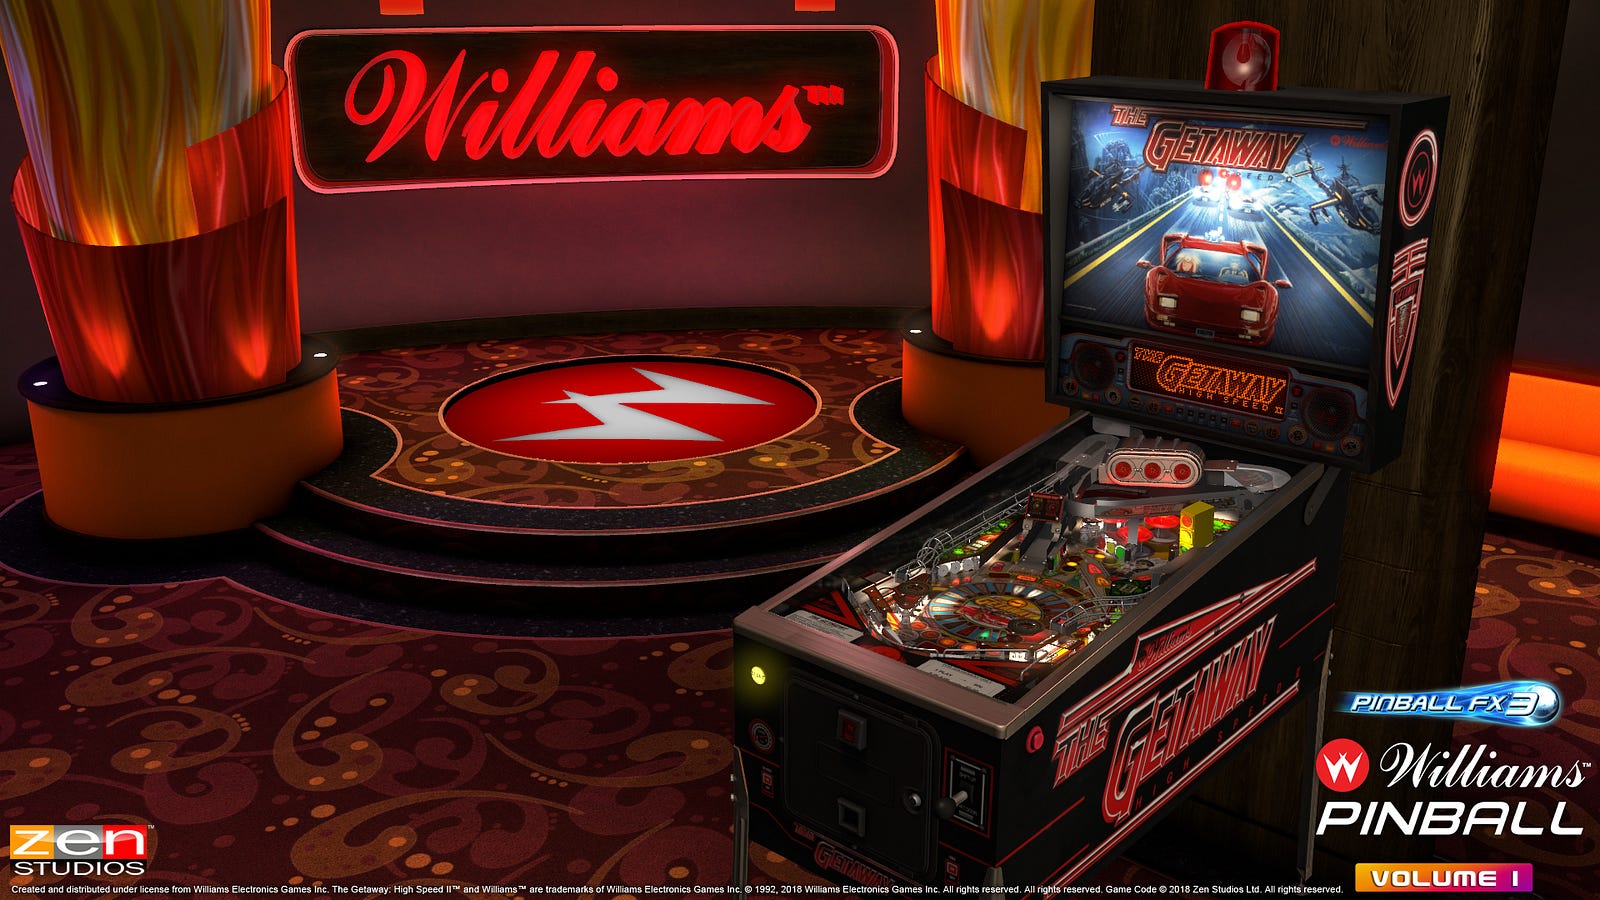 Les tables Williams sur Pinball FX3 ! 1*yl0LJNPa_brSueJx4IAPWA